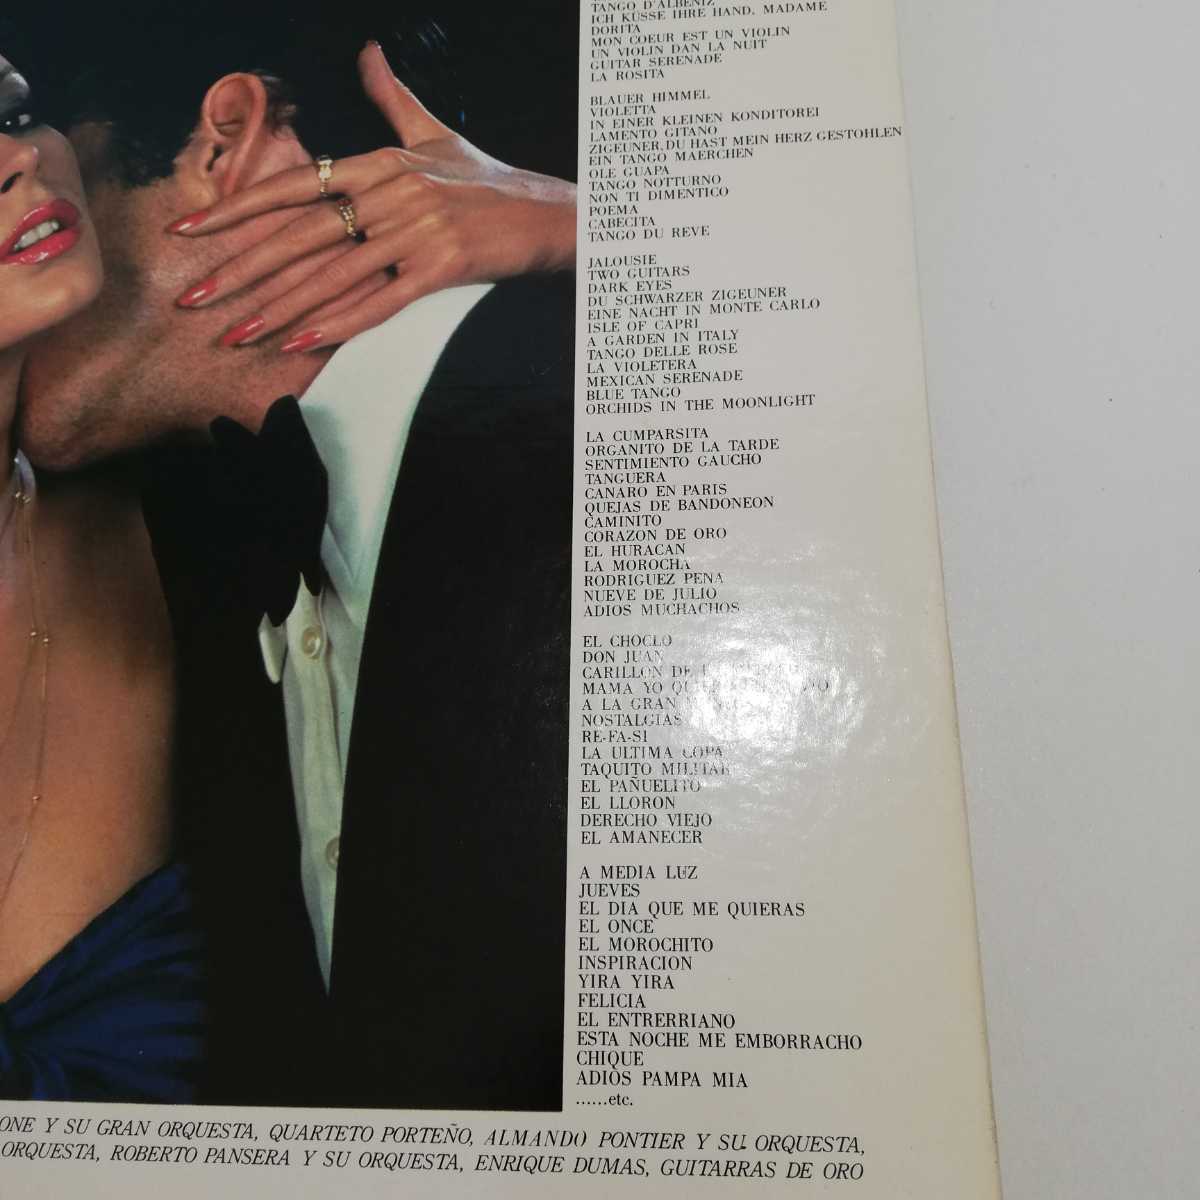 LP盤 レコード 8枚組BOX 真珠採り タンゴ・ゴールデン・コレクション ポリドール リーダーズダイジェスト コンチネンタル アルゼンチン_画像2